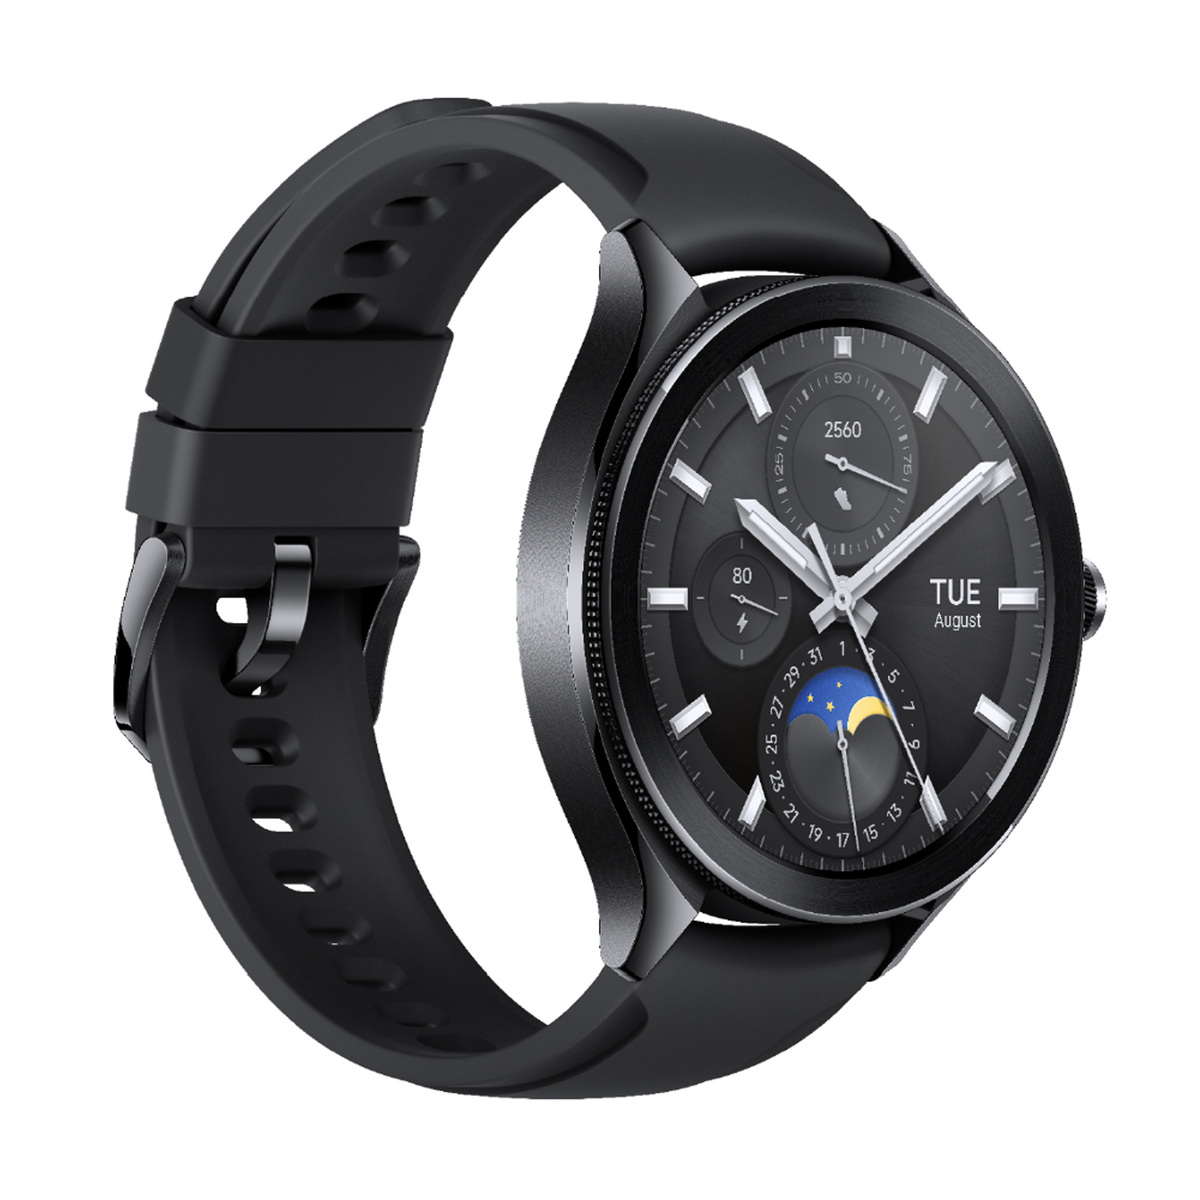 شاومي ساعة ذكية واتش 2 برو، مقاس 46 مم، شاشة أموليد مقاس 1.43 بوصة، لون أسود مع حزام مطاطي أسود، BHR7211GL